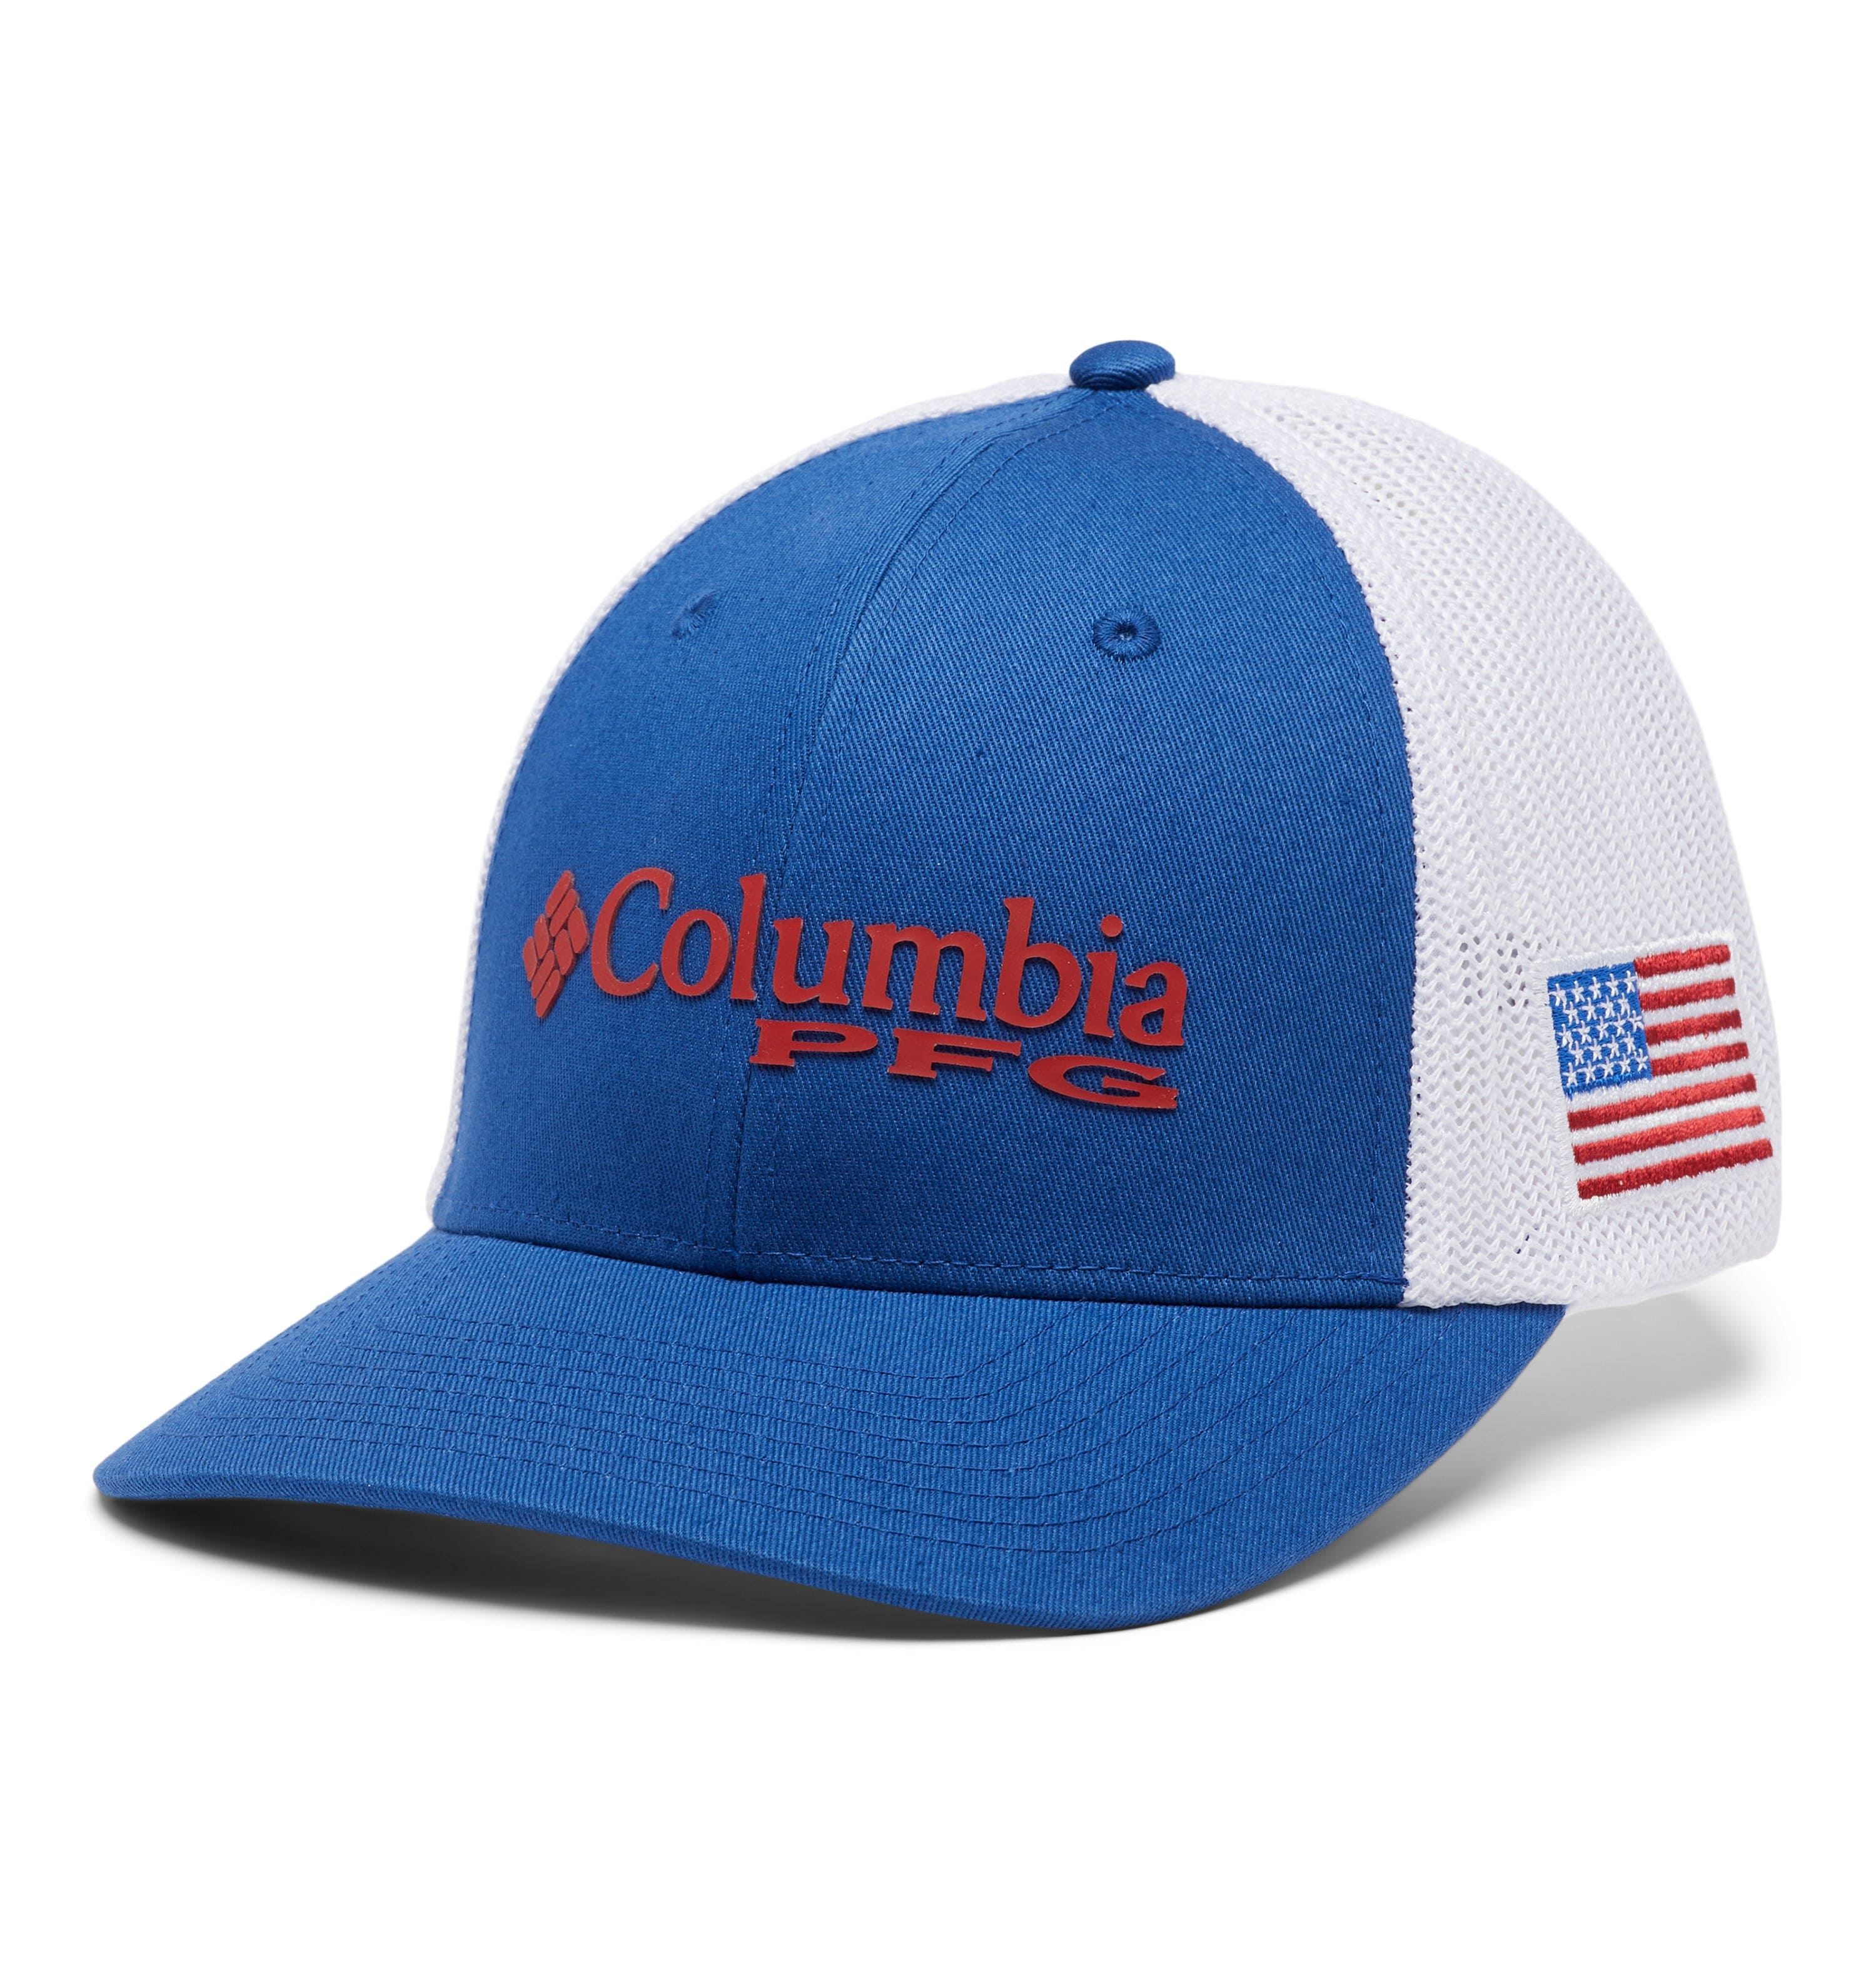 Columbia Accessories | Columbia PFG Performance Fishing Gear Flexfit Hat L/XL Distressed | Color: Black/Tan | Size: L/XL | Wscott210's Closet